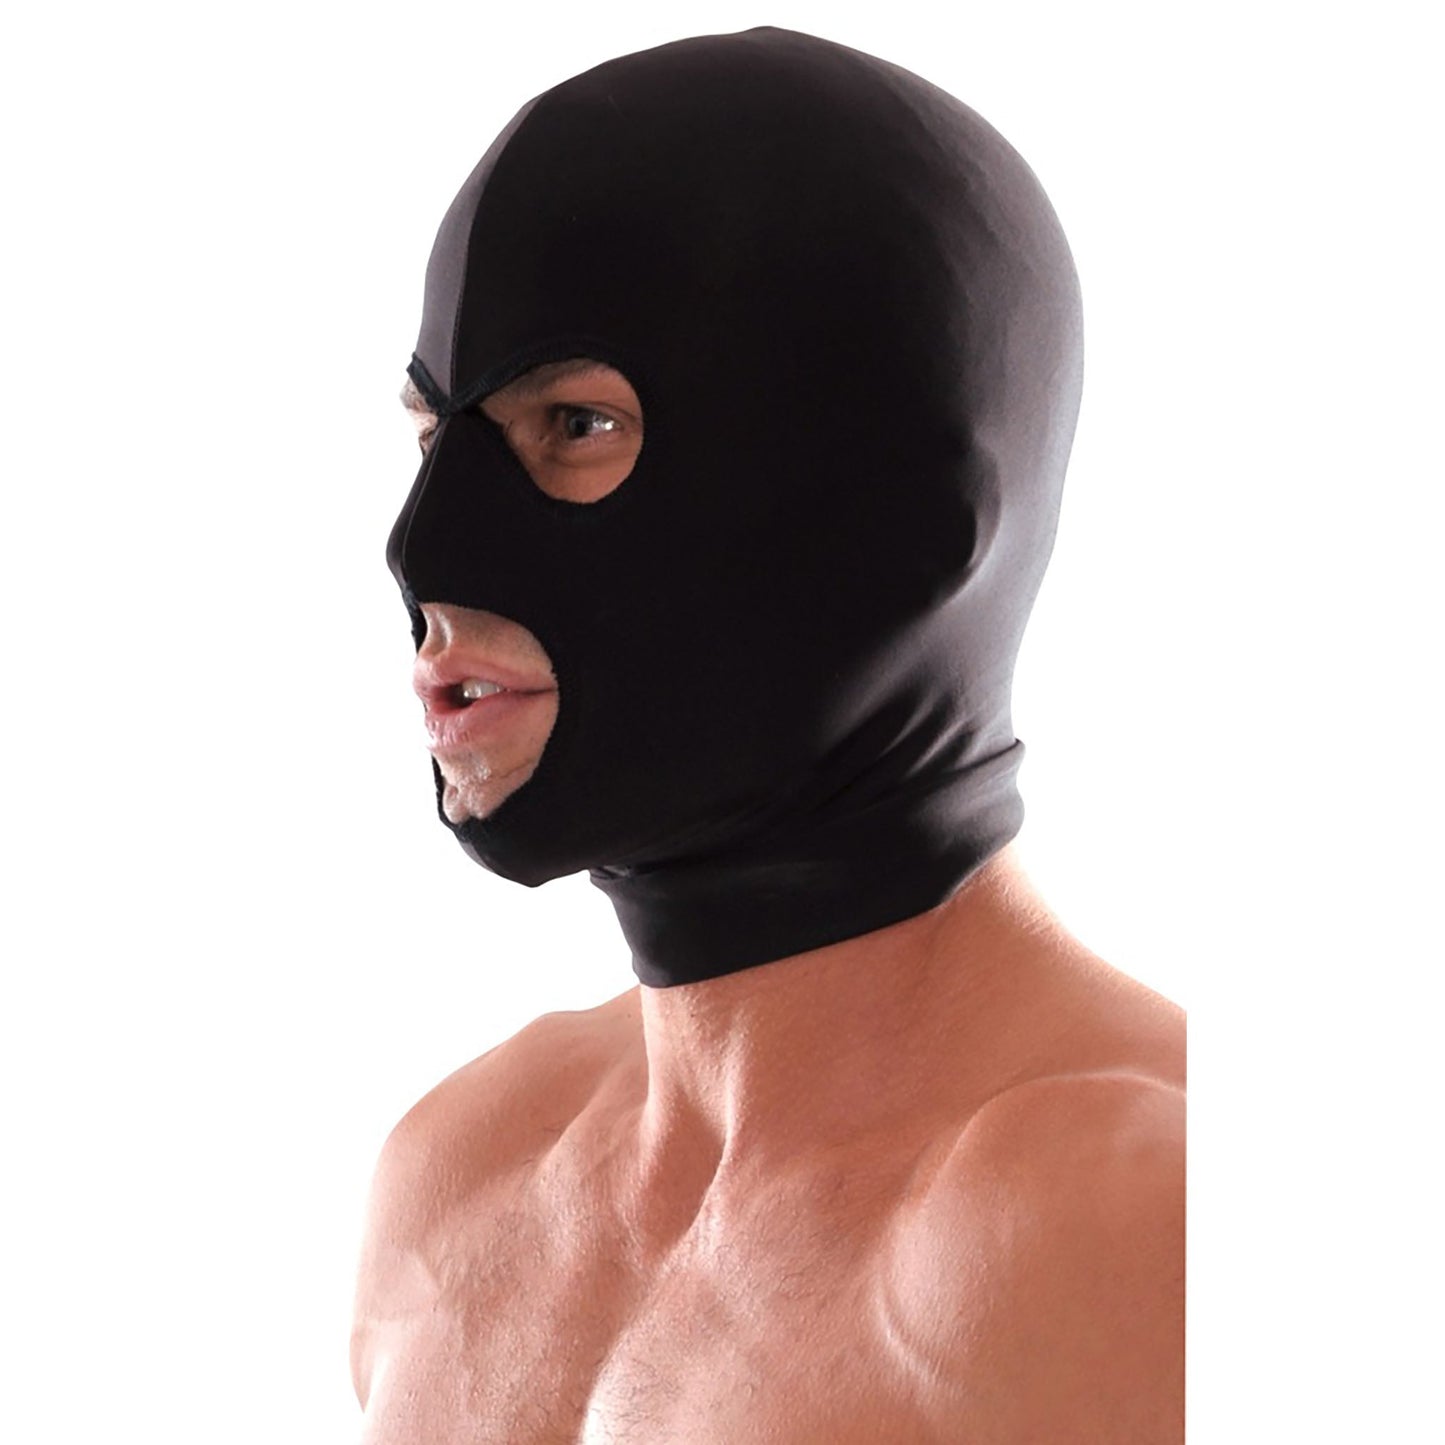 Spandex 3-hole Hood, schwarze Kopfmaske mit 3 Löchern von ihm getragen